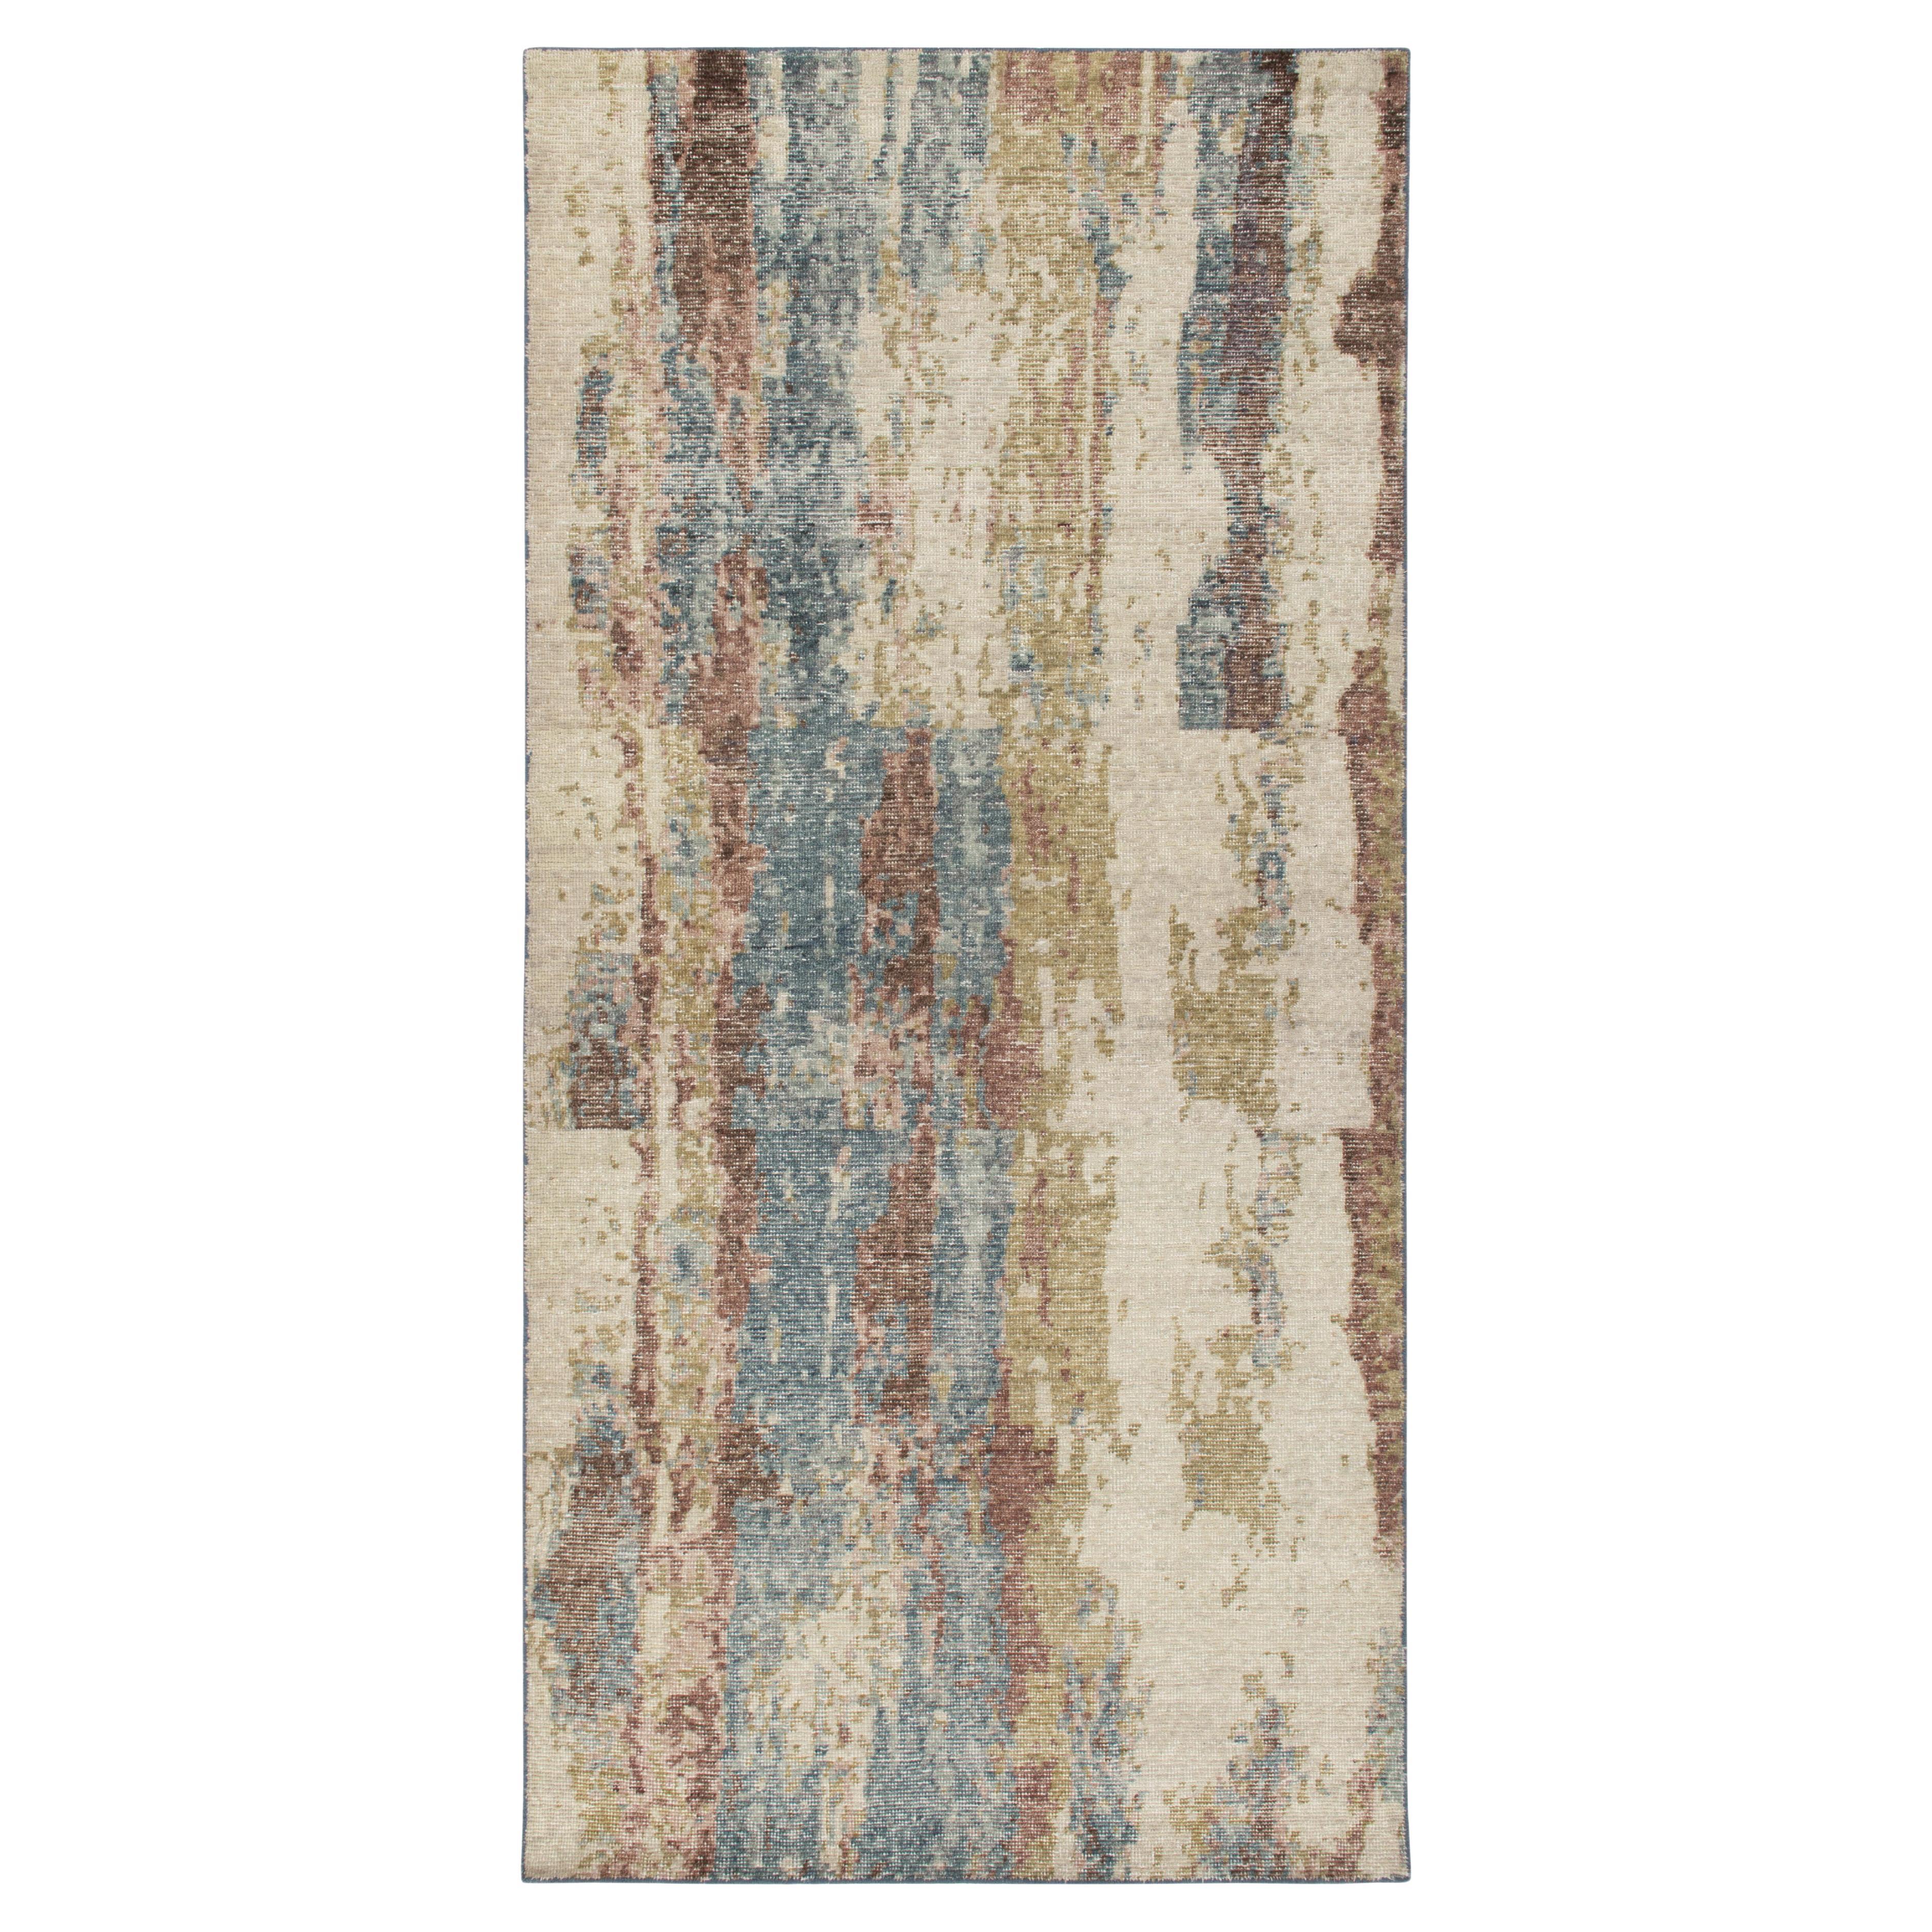 Abstrakter Teppich & Kelim-Teppich im Distressed-Stil in Weiß, Blau, Beige-Braun-Muster